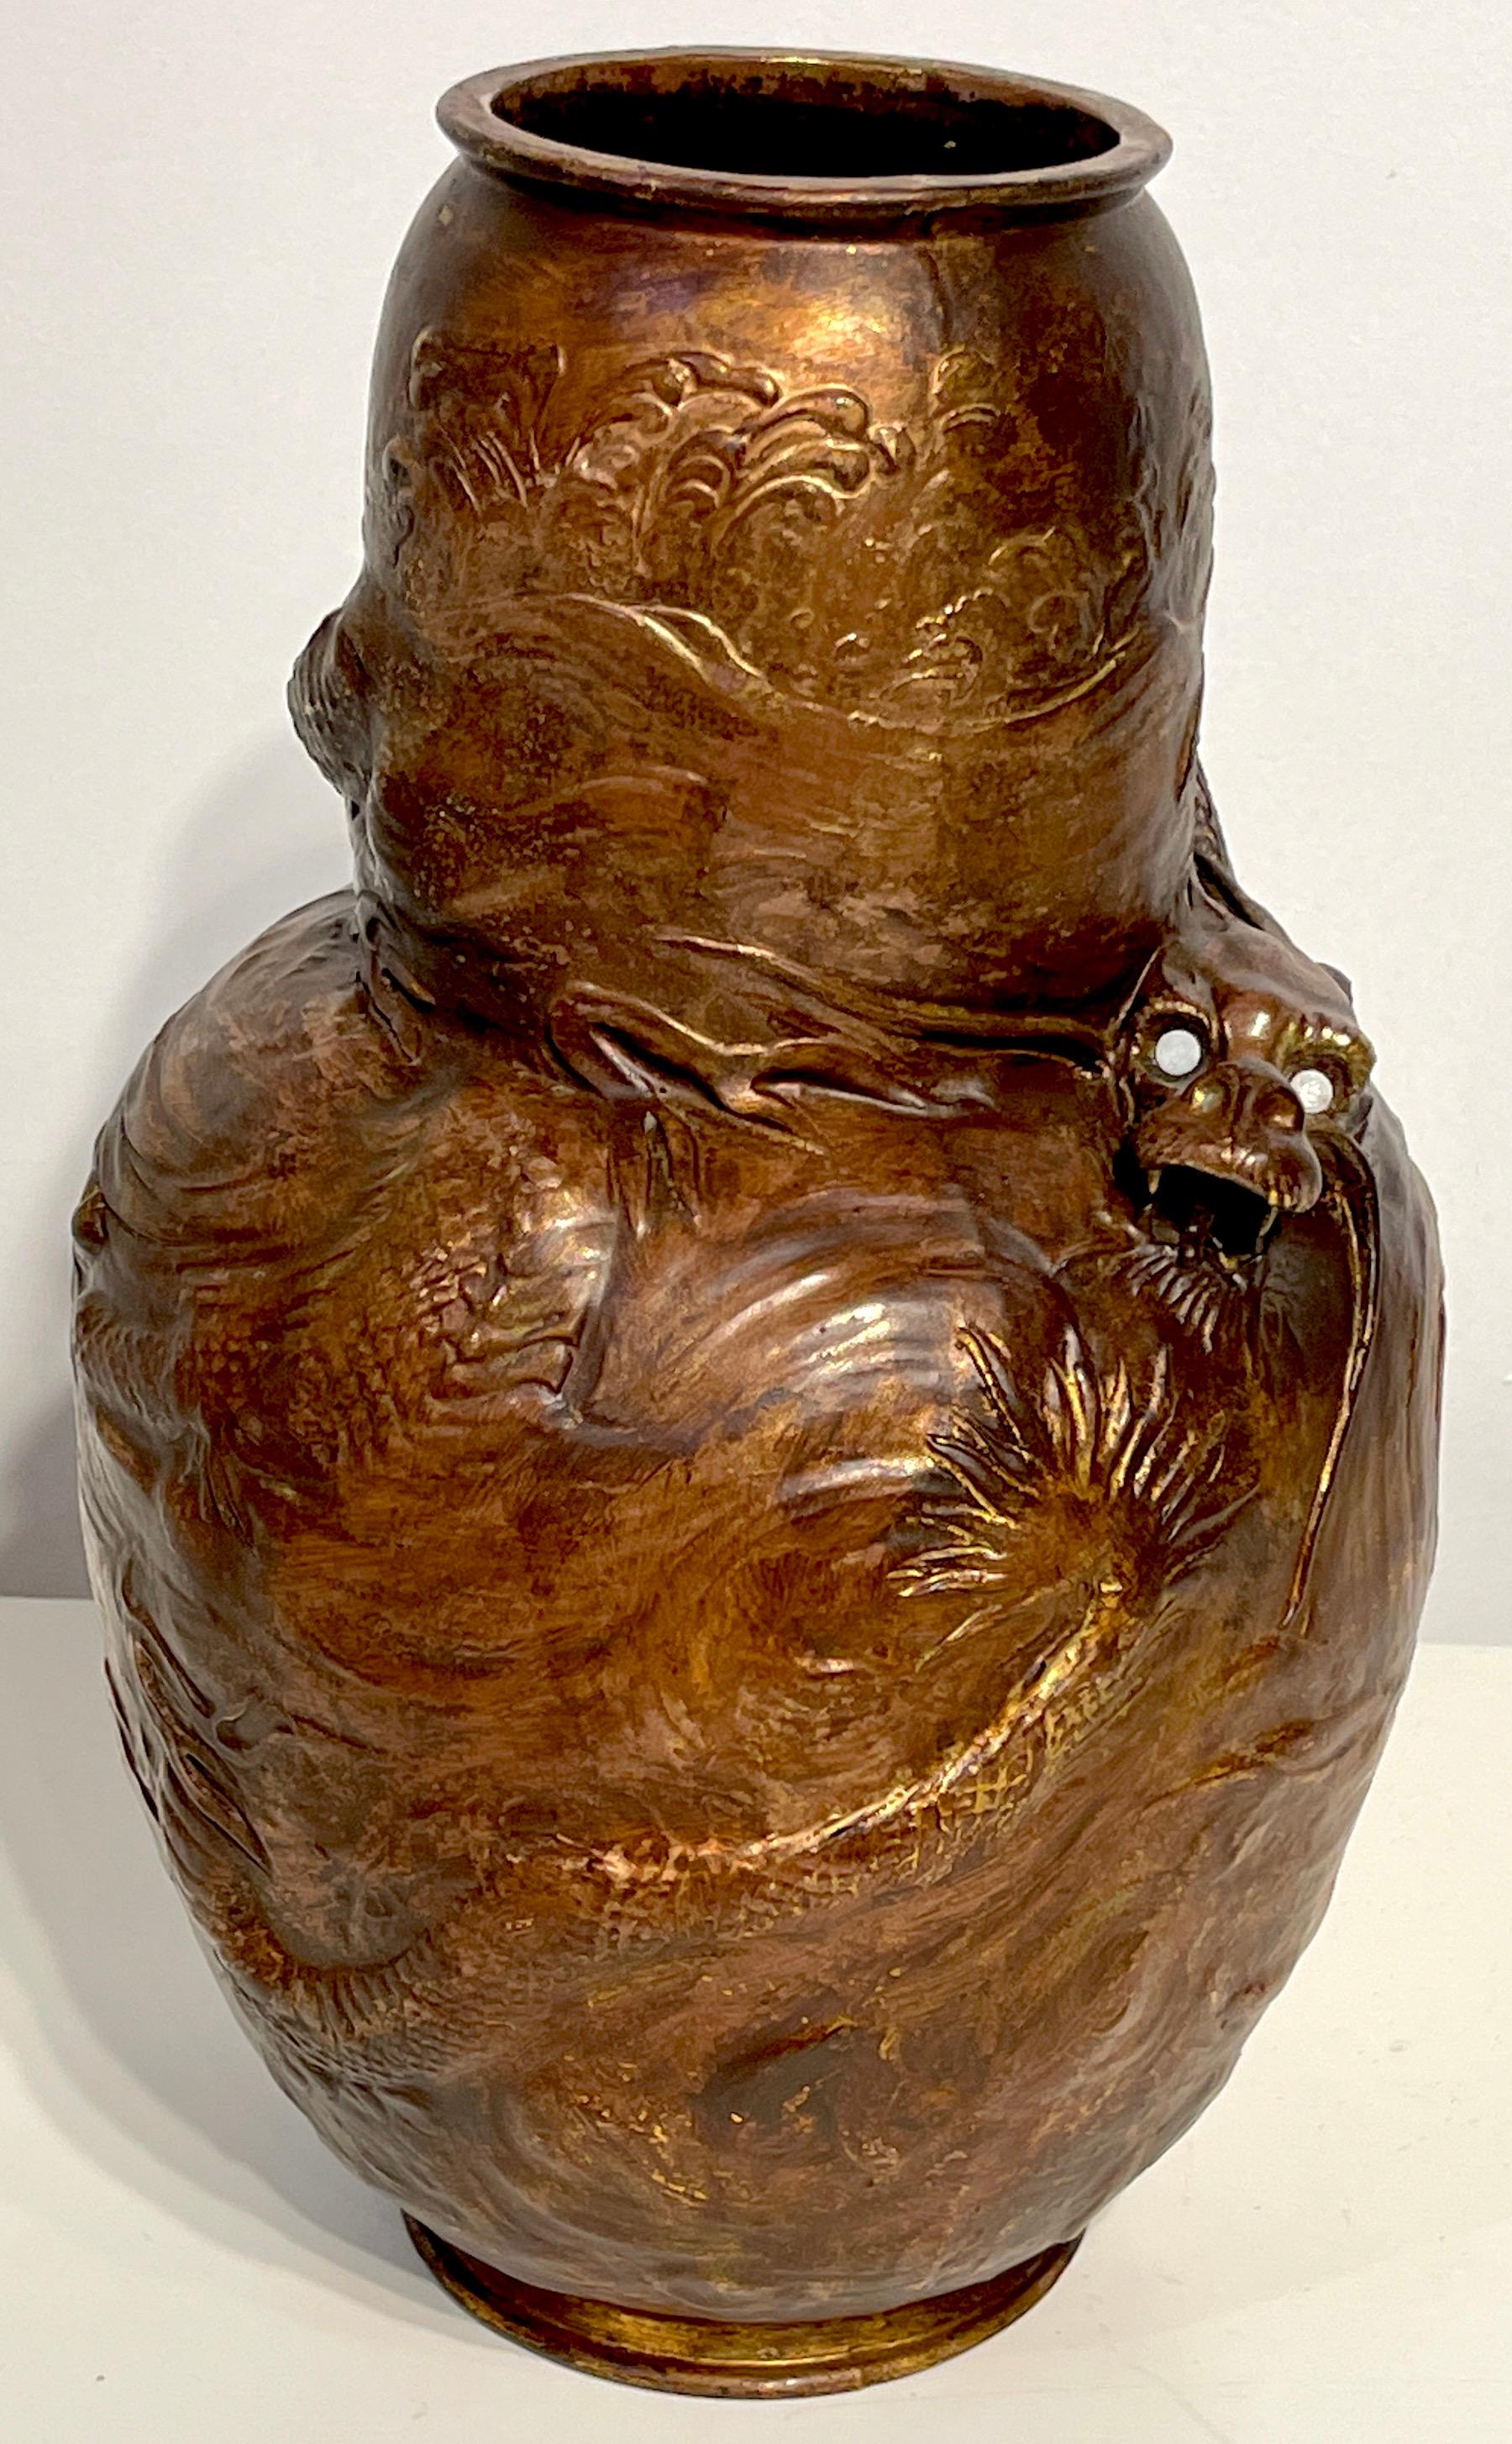 Vase en cuivre à motif de dragon japonisant de Bretby Pottery 
Angleterre, Circa 1890s
Une grande et inhabituelle œuvre de la célèbre poterie britannique Bretby.
Le vase en forme de gourde effilée est enveloppé d'un dragon flottant avec des yeux